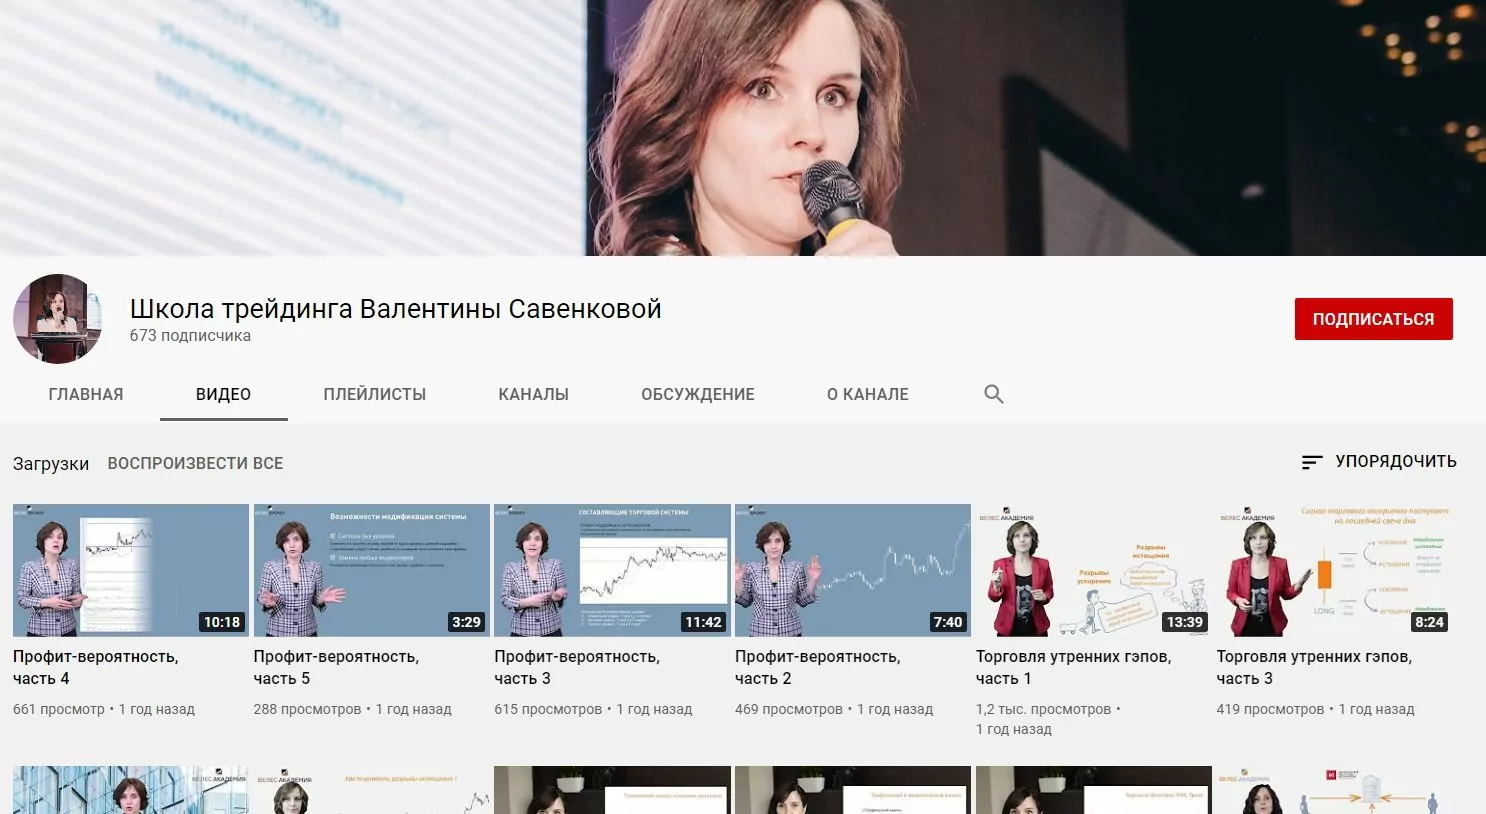 Ютуб канал Валентины Савенковой